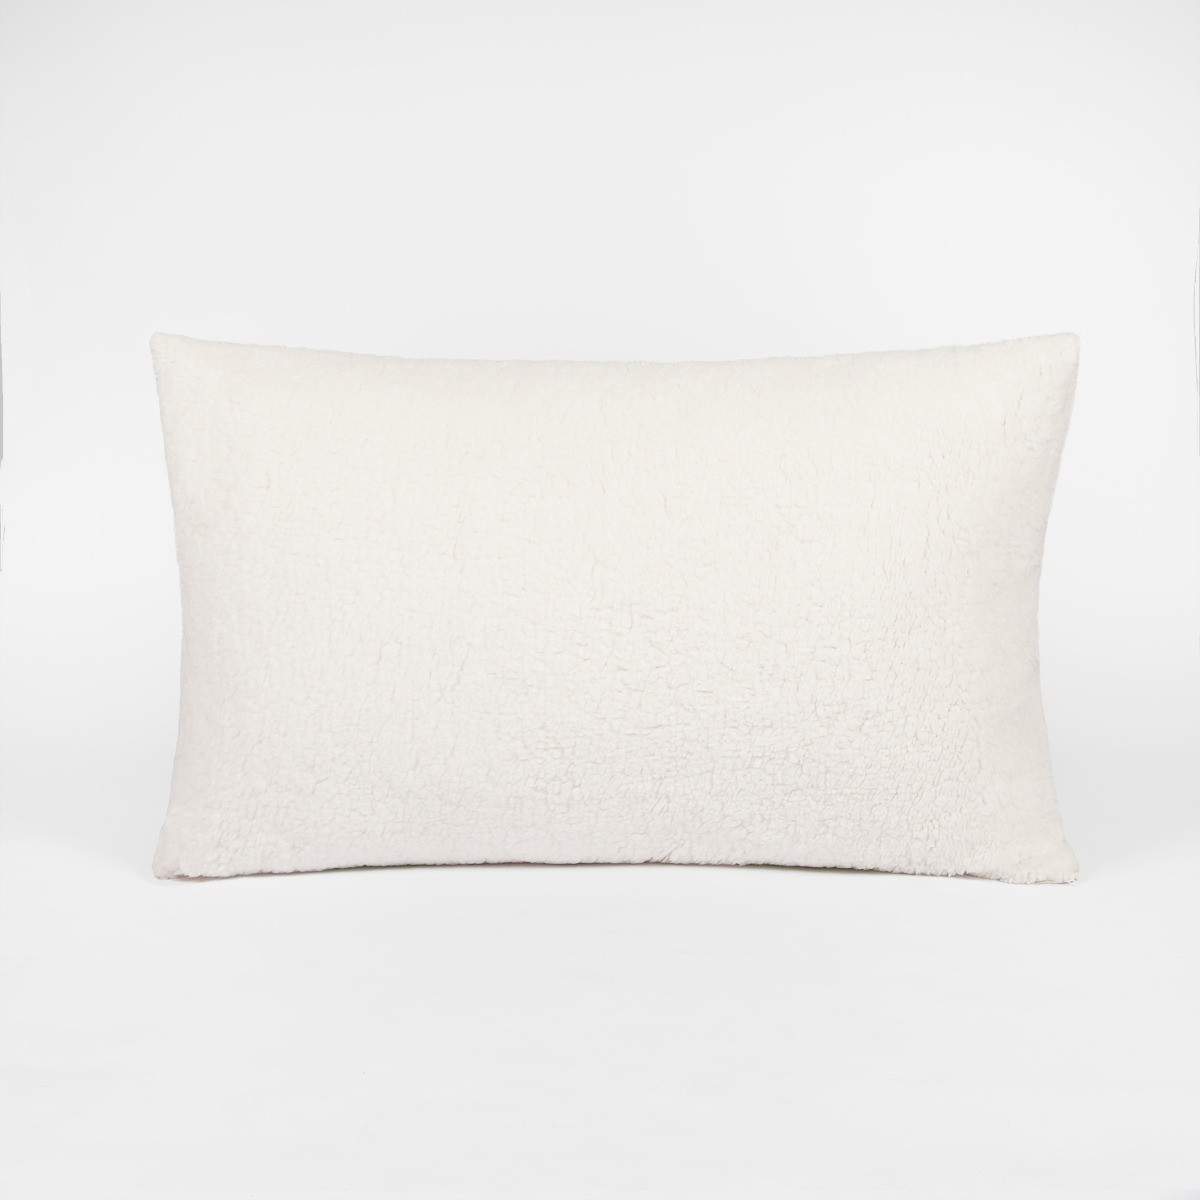 OHS Teddy Fleece Pillow - Cream>